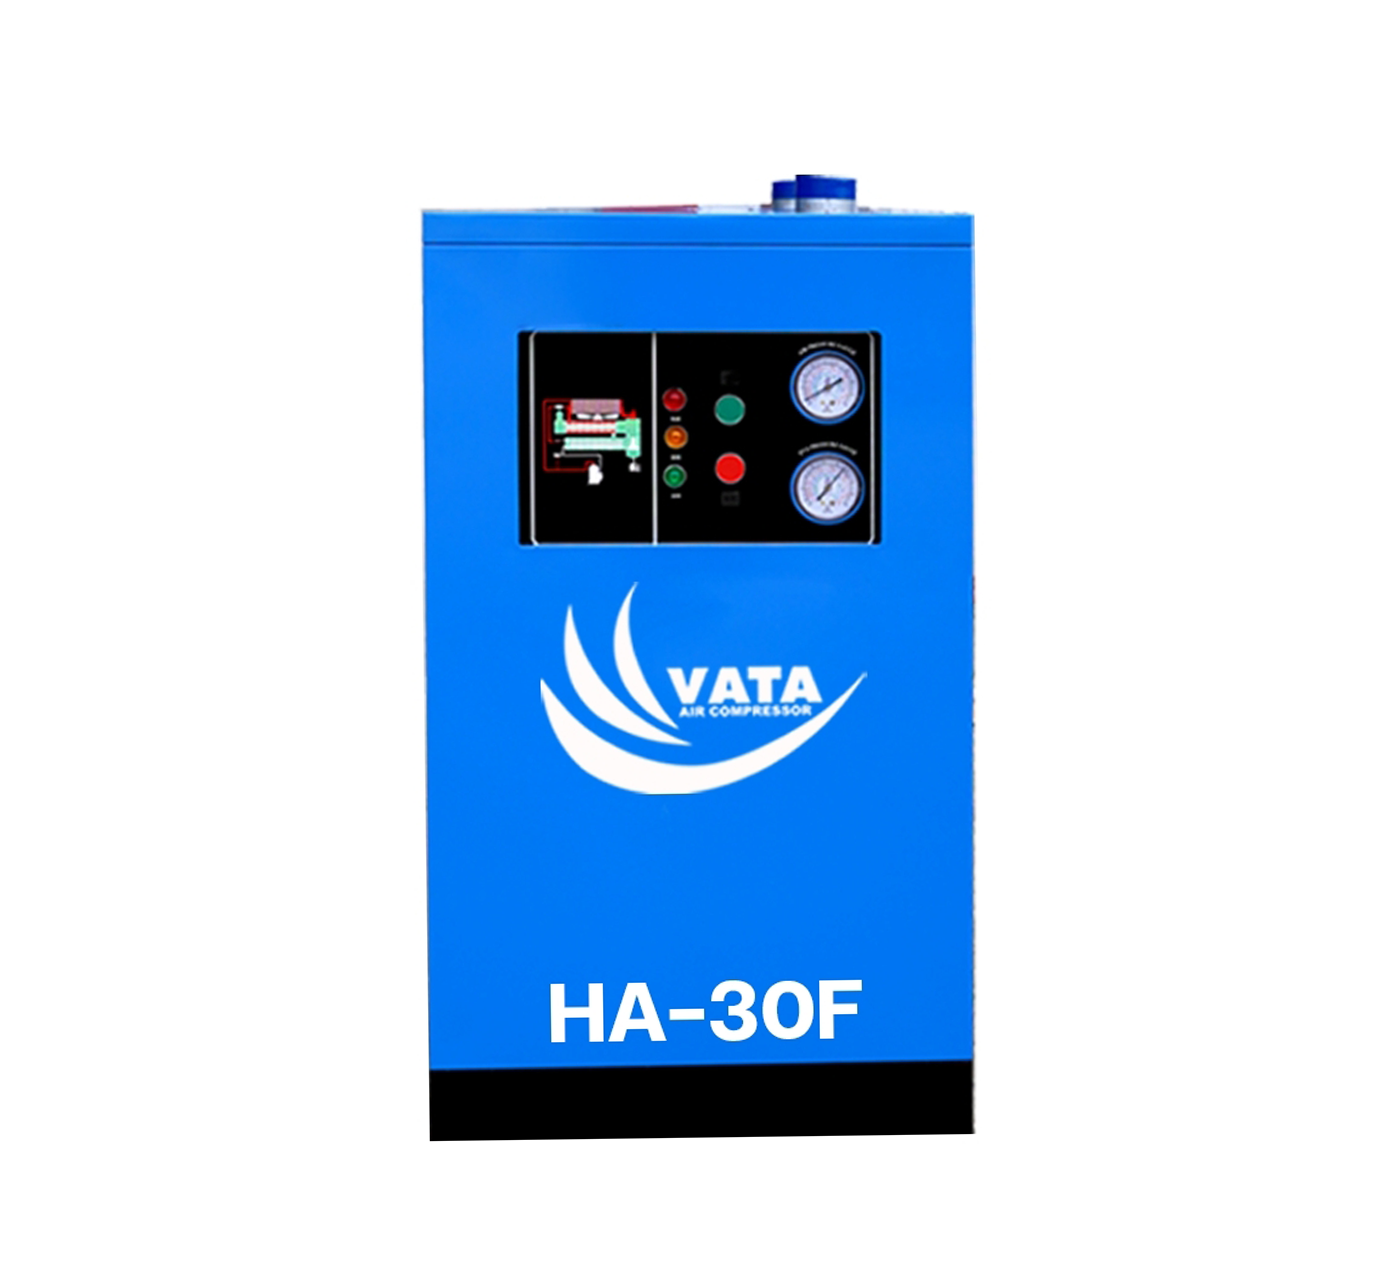 เครื่องทำลมแห้ง Refrigerated Air Dryer แบรนด์ VATA รุ่น HA-30F ขนาด 0.96 kw. ไฟฟ้า 220V รับประกันสินค้า 1 ปี ตามเงื่อนไขของบริษัทฯ